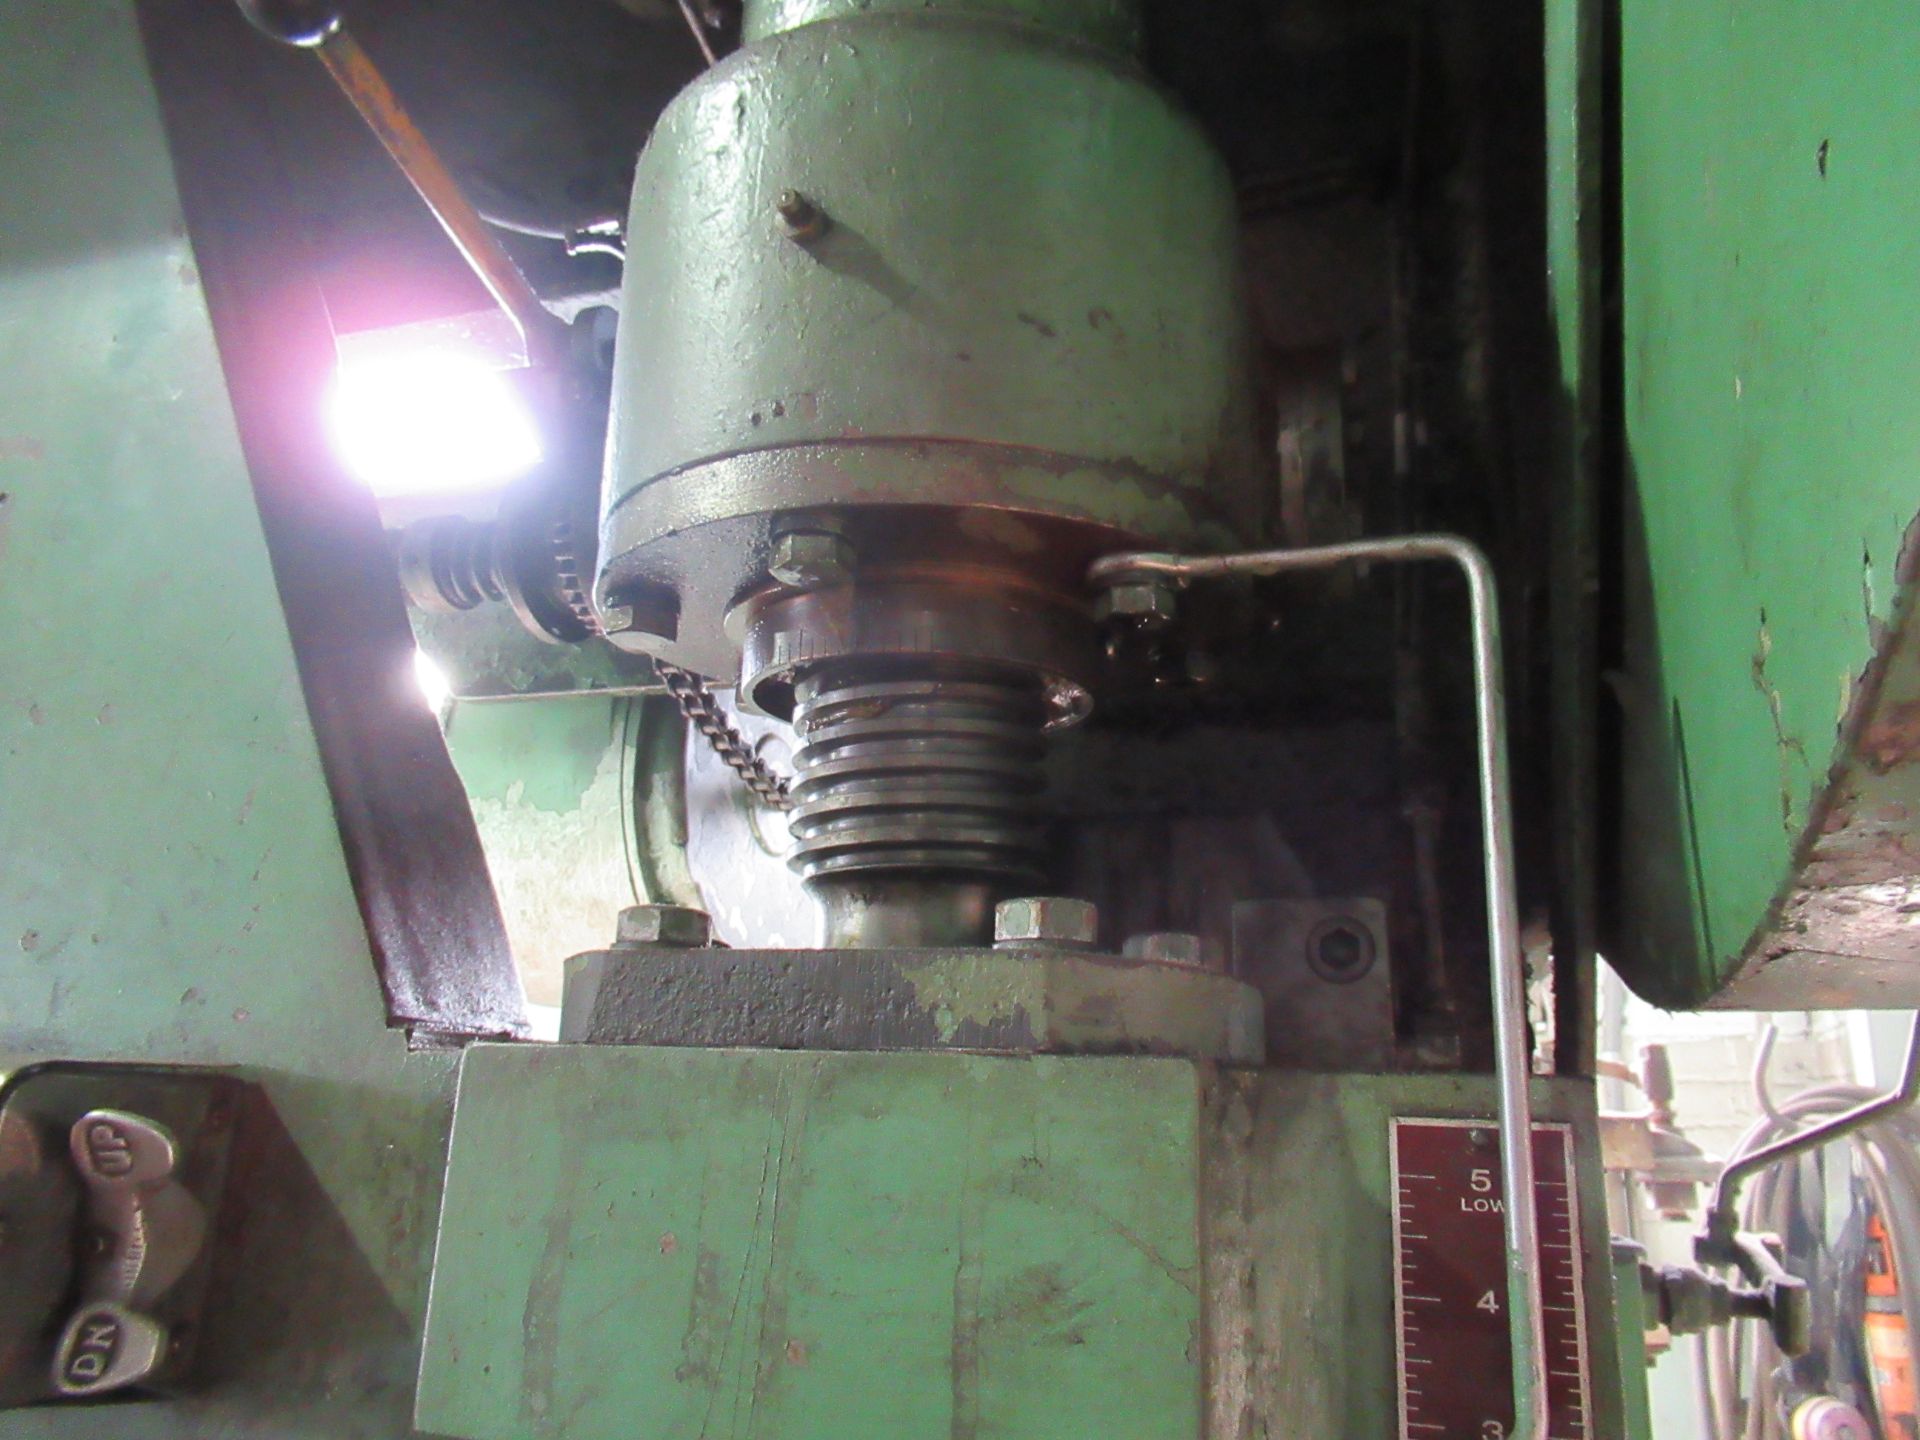 Cyril Bath Mdl. 150-10 12’ x 150 Ton Mechanical Press Brake - Image 8 of 14